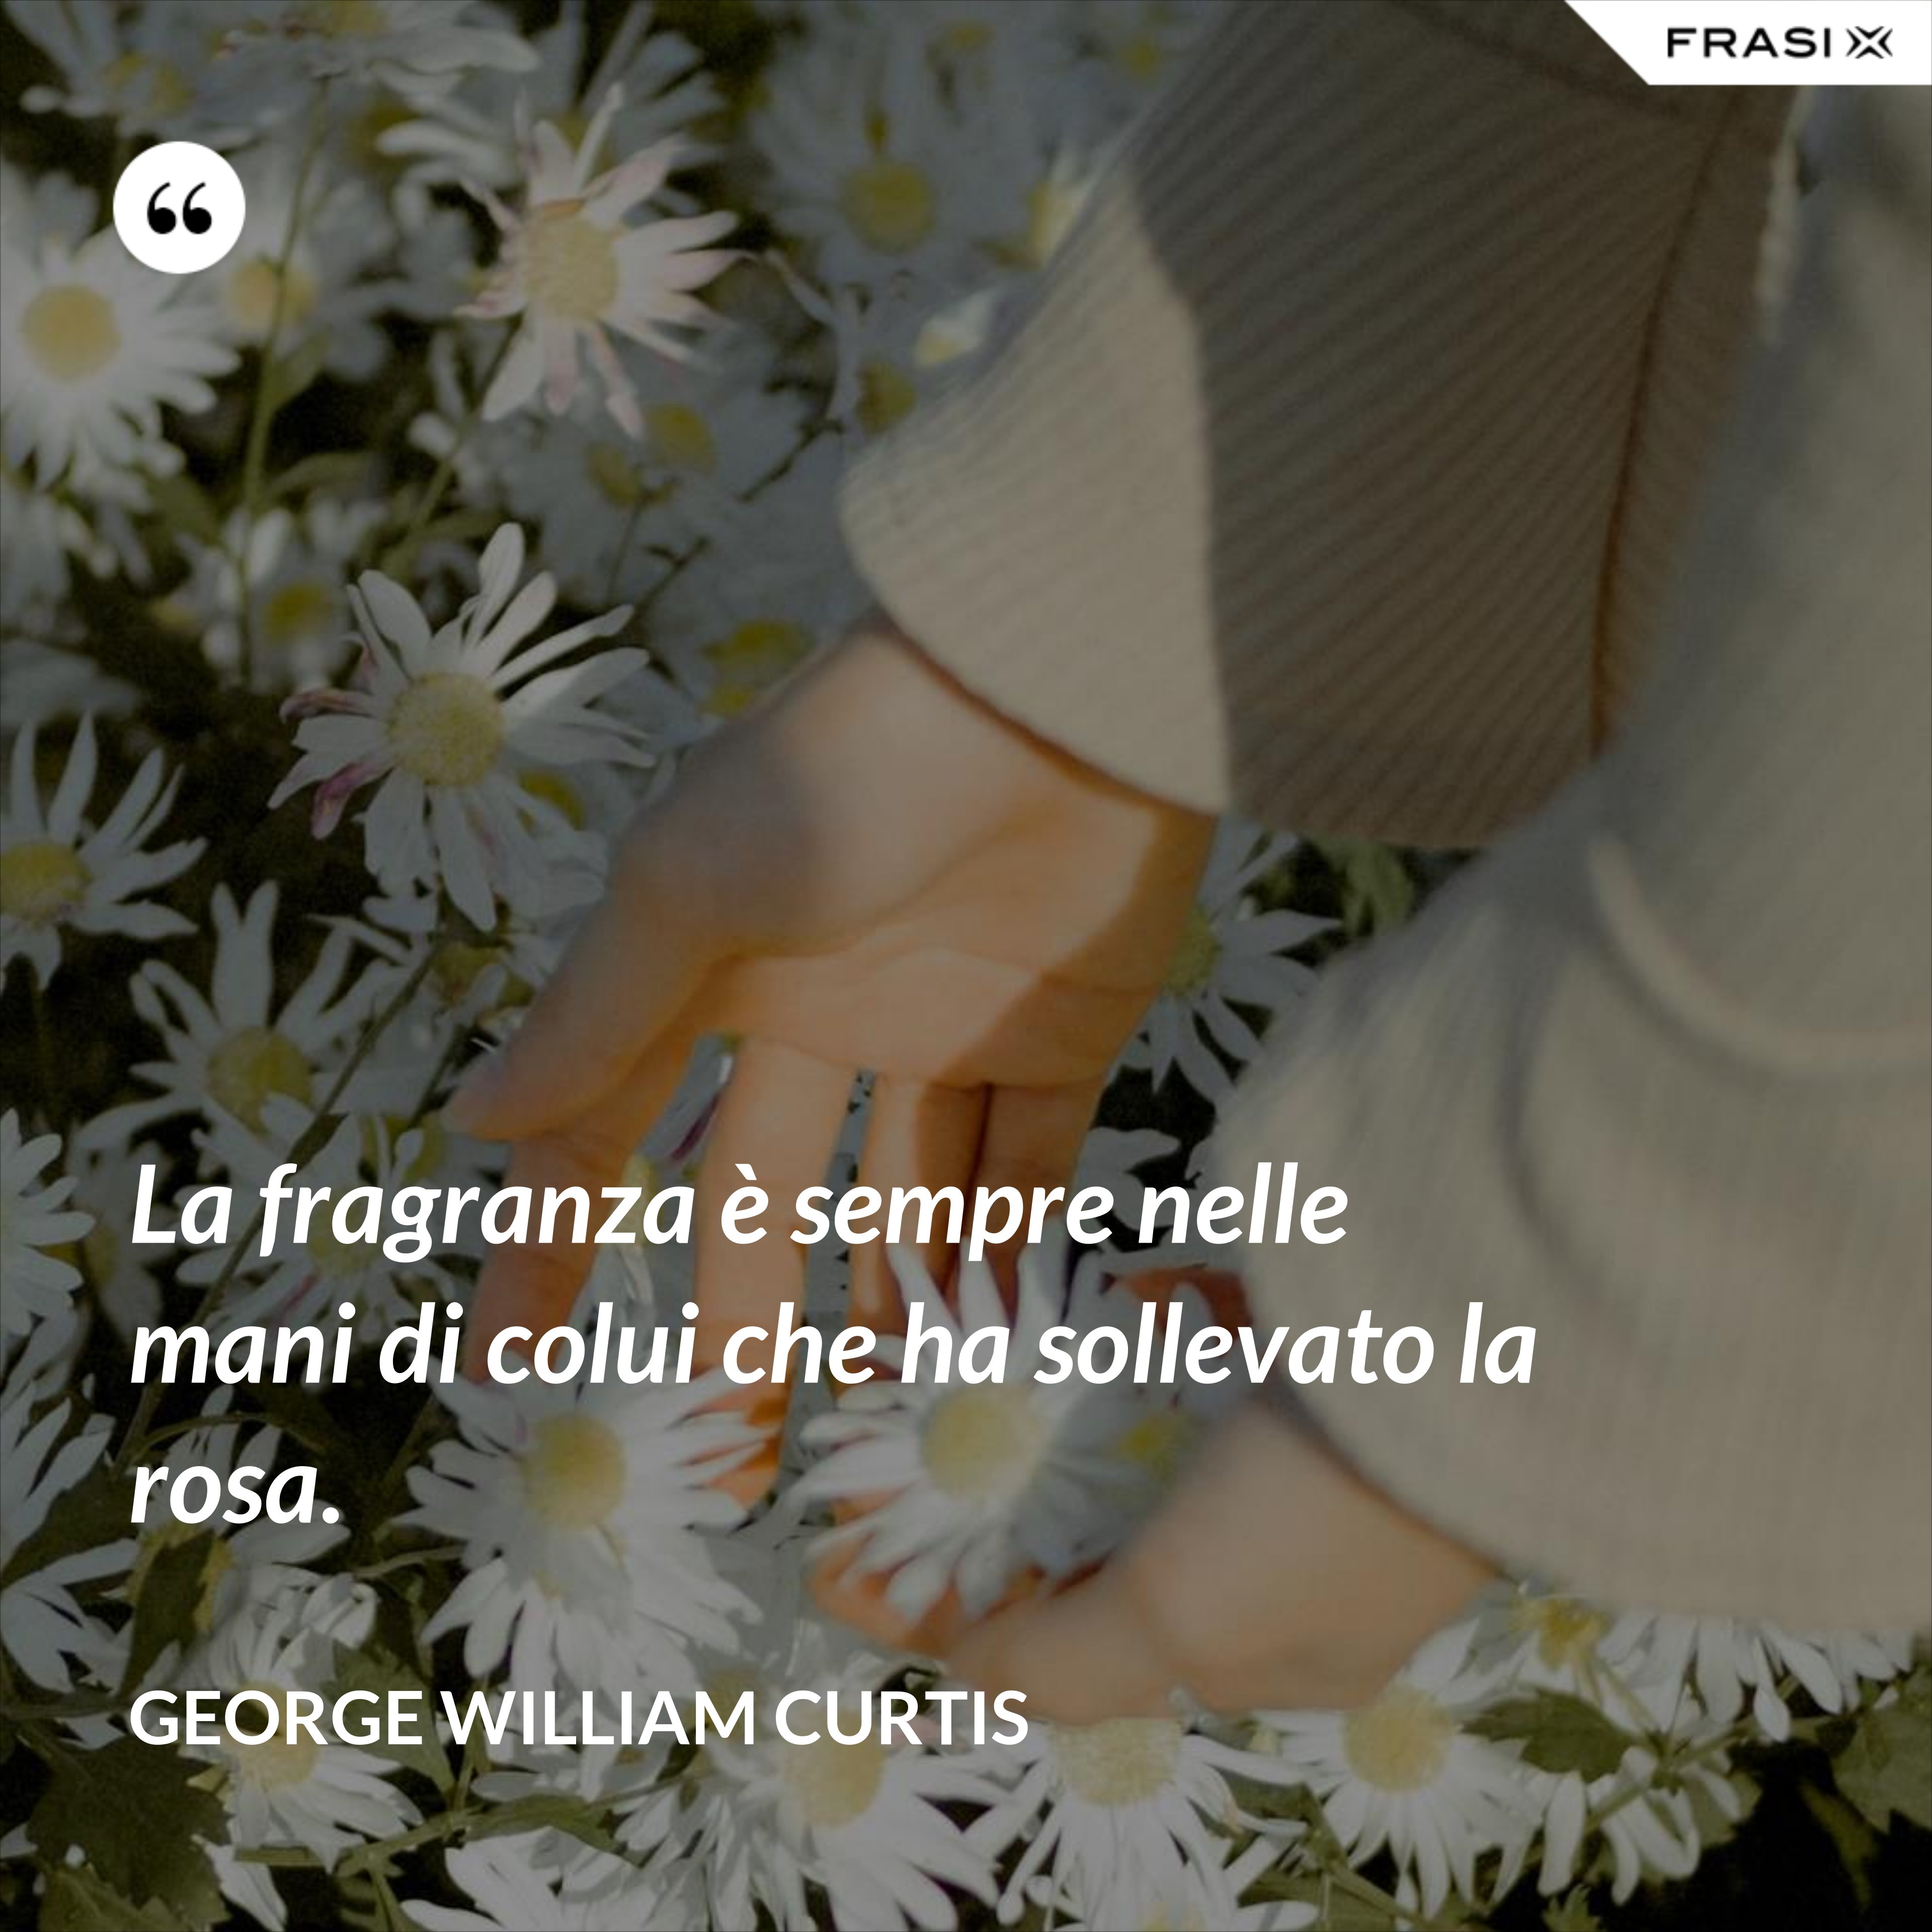 La fragranza è sempre nelle mani di colui che ha sollevato la rosa. - George William Curtis